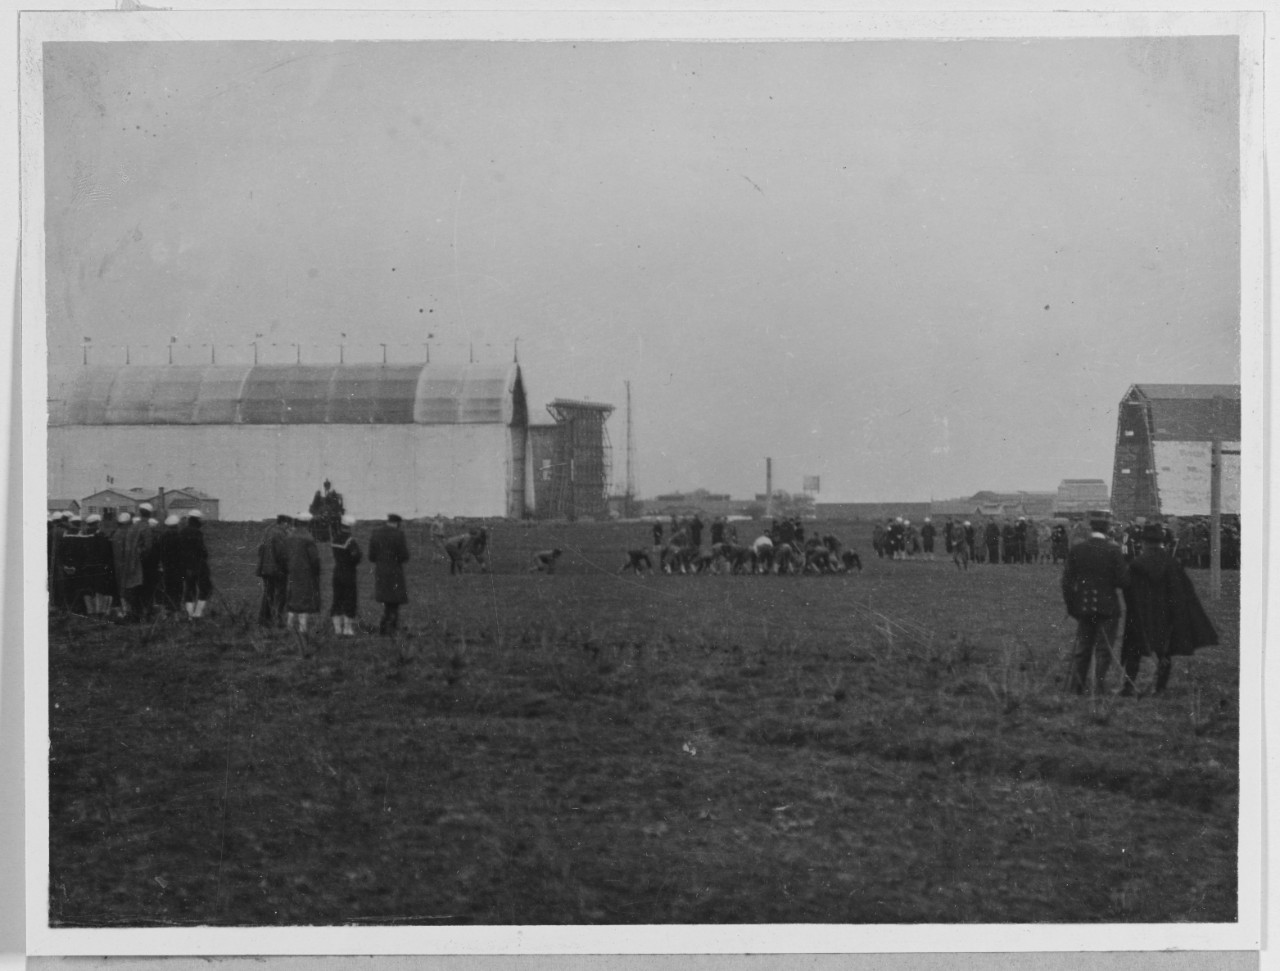 Paimboeuf U.S. Naval Air Station. Football Team. France. 1917-1919